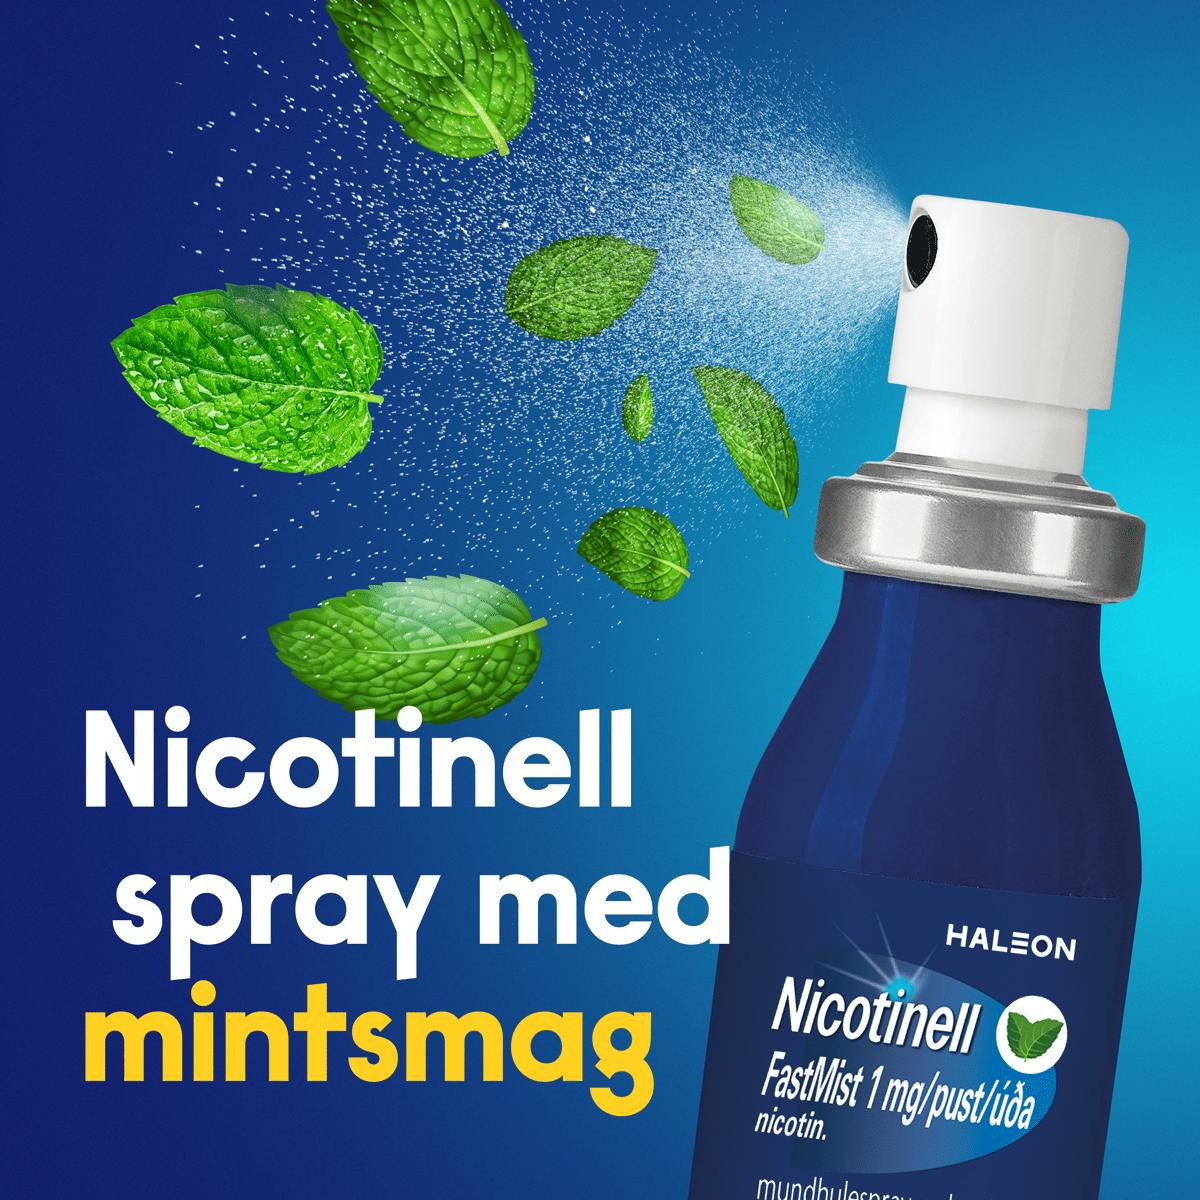 Nicotinell spray med frisk mintsmak